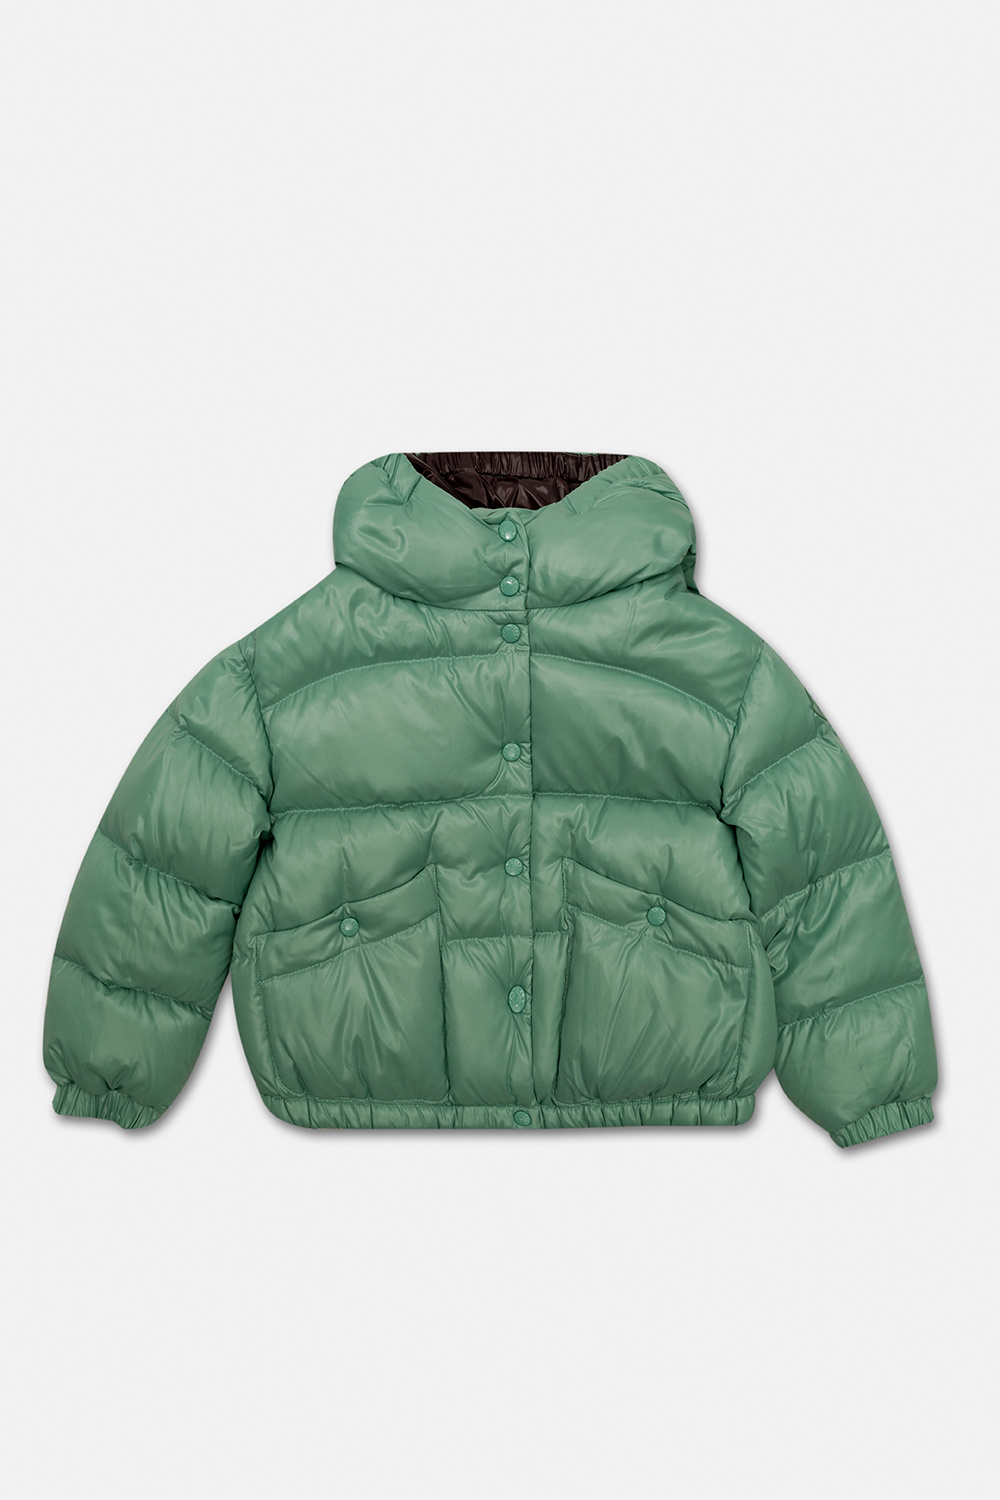 Moncler Enfant ’Bardanette’ down jacket